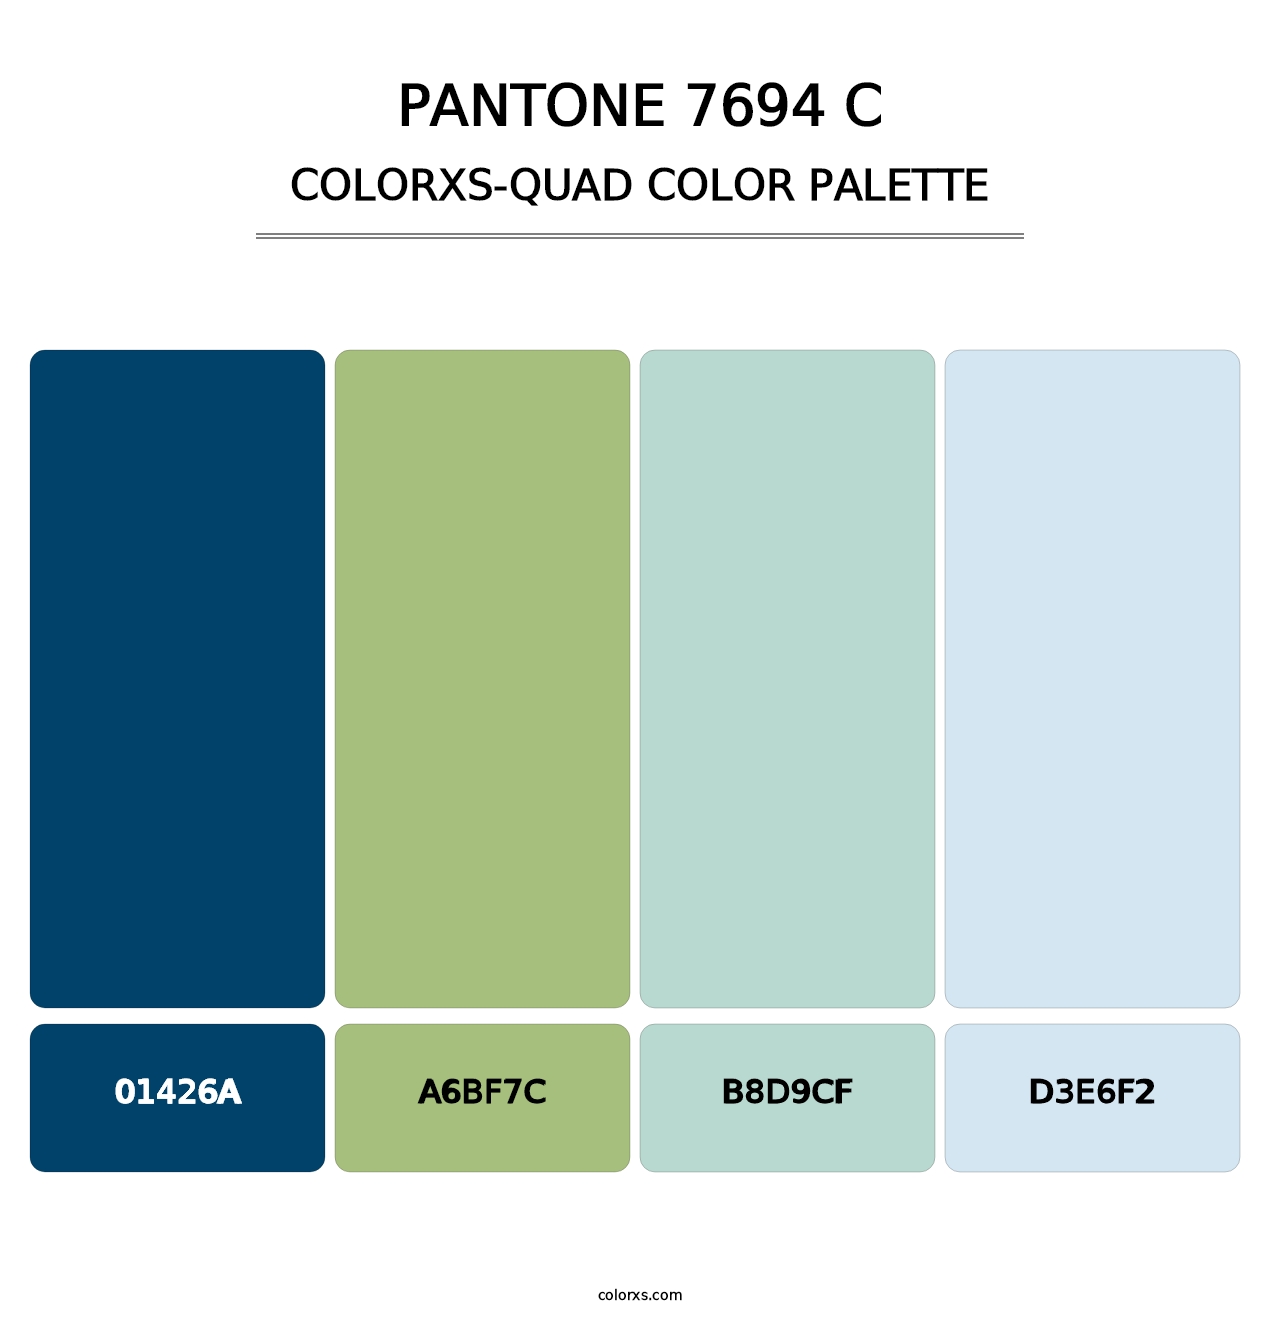 PANTONE 7694 C - Colorxs Quad Palette